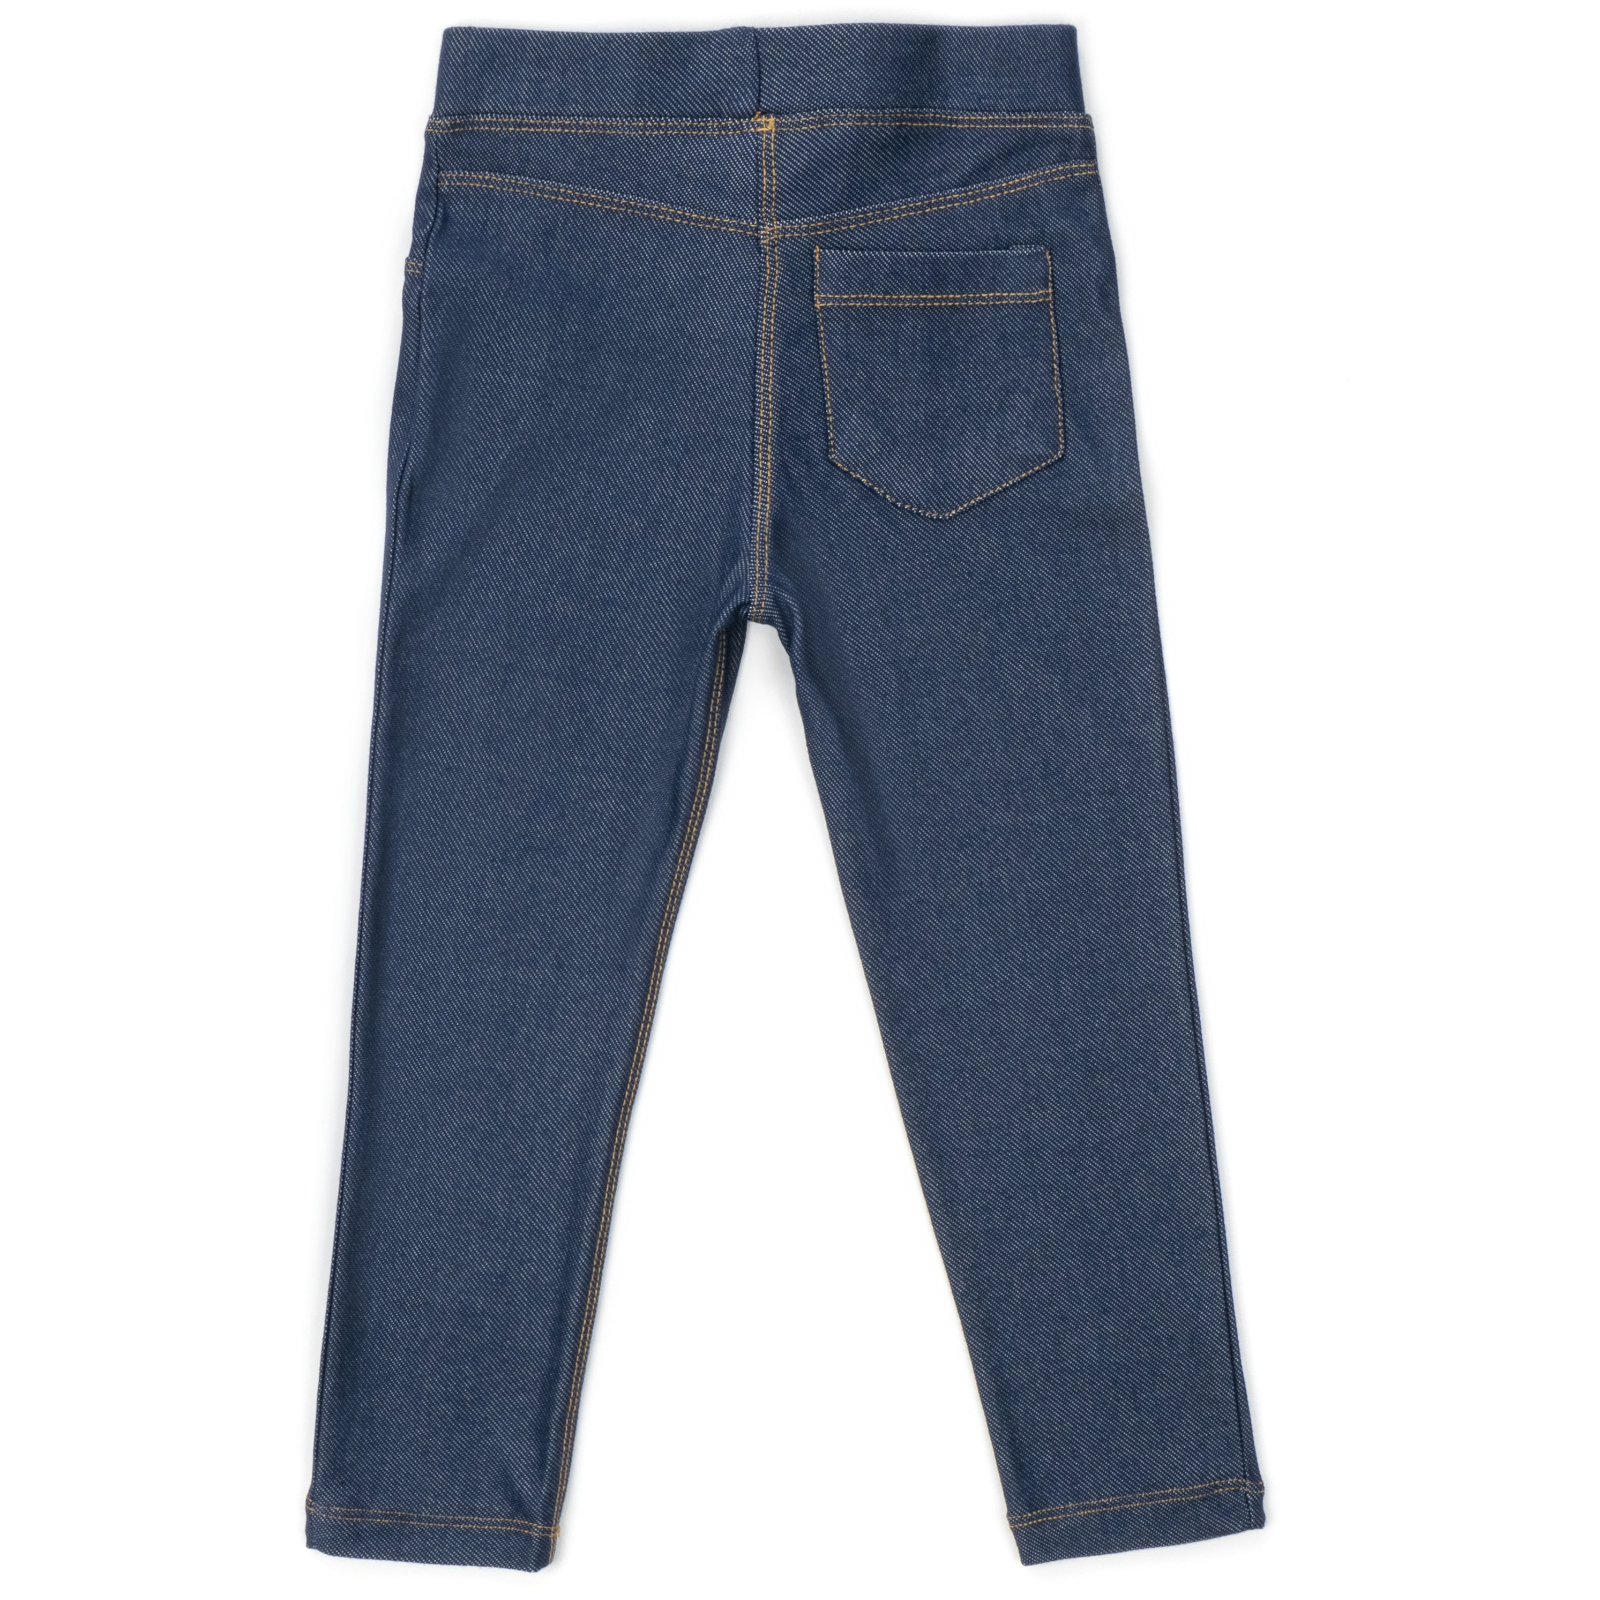 Лосины Breeze трикотажные (4416-134G-jeans) изображение 2